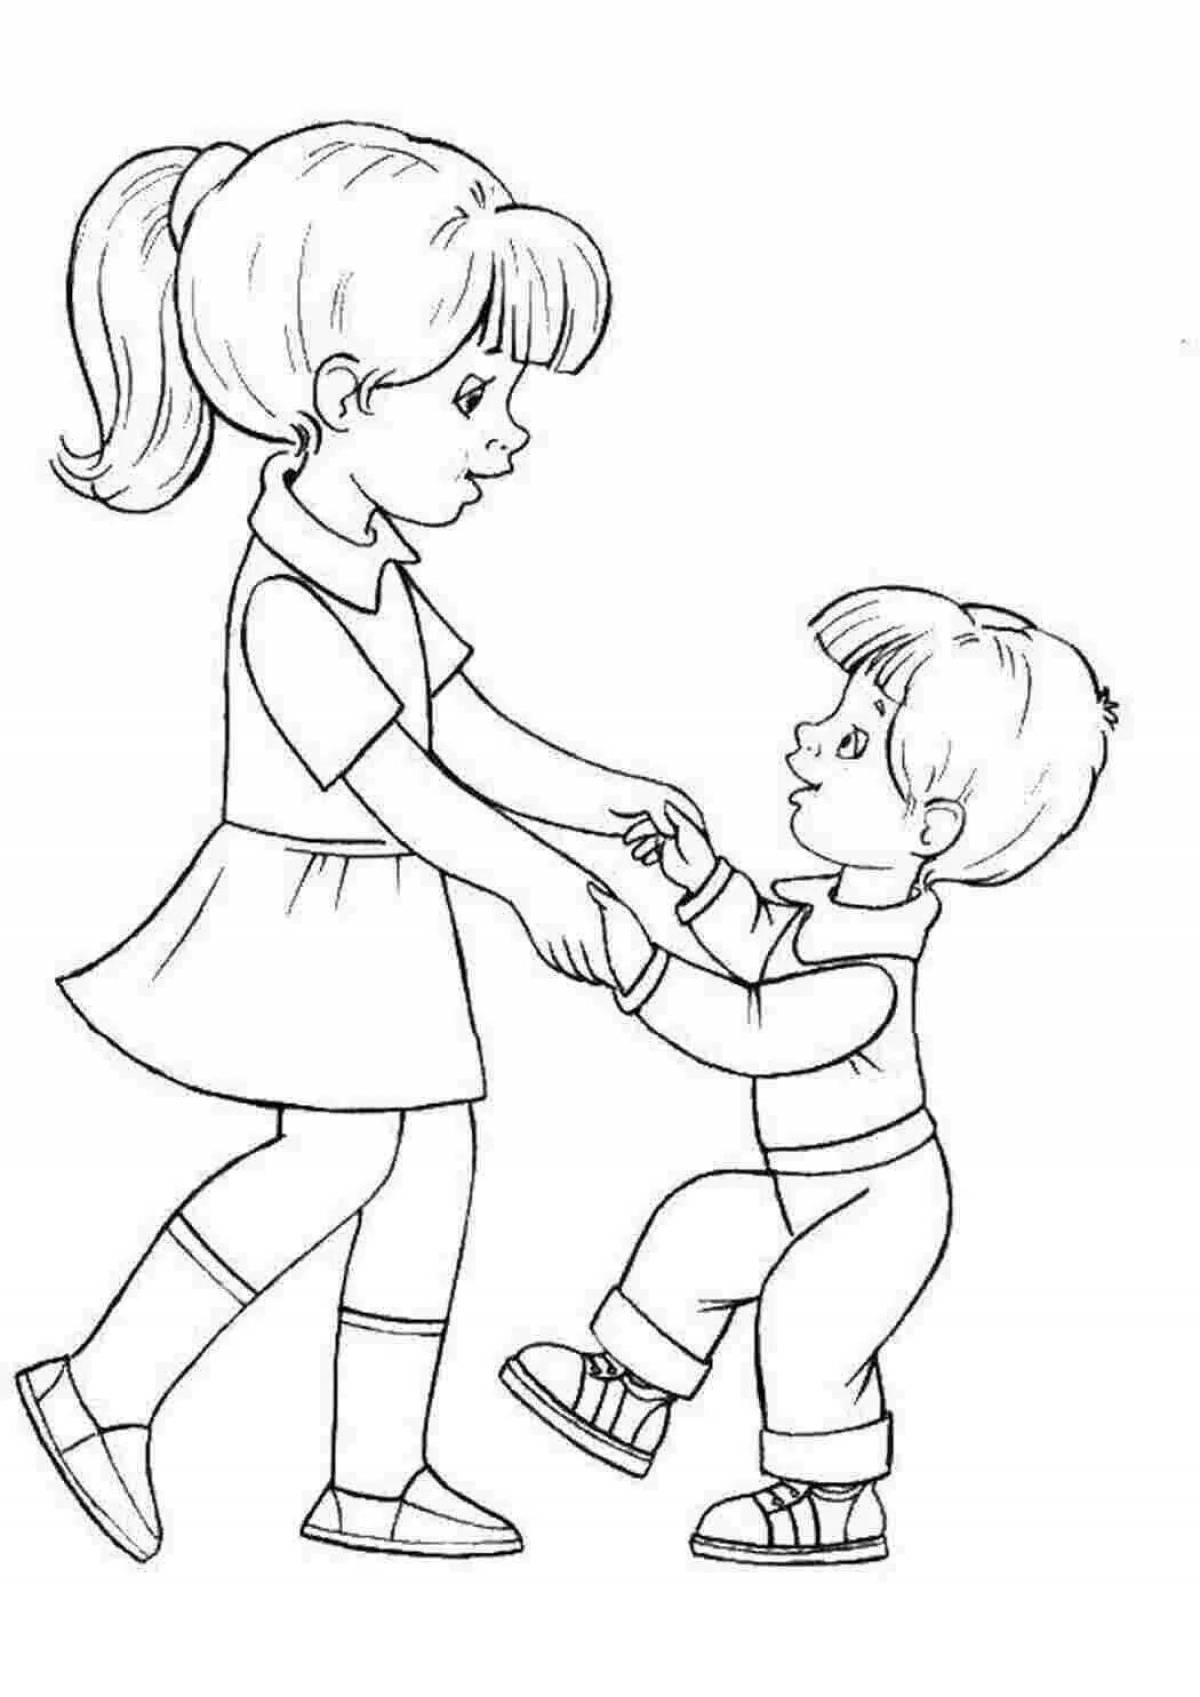 Великолепная раскраска рисунок девочки и мальчика